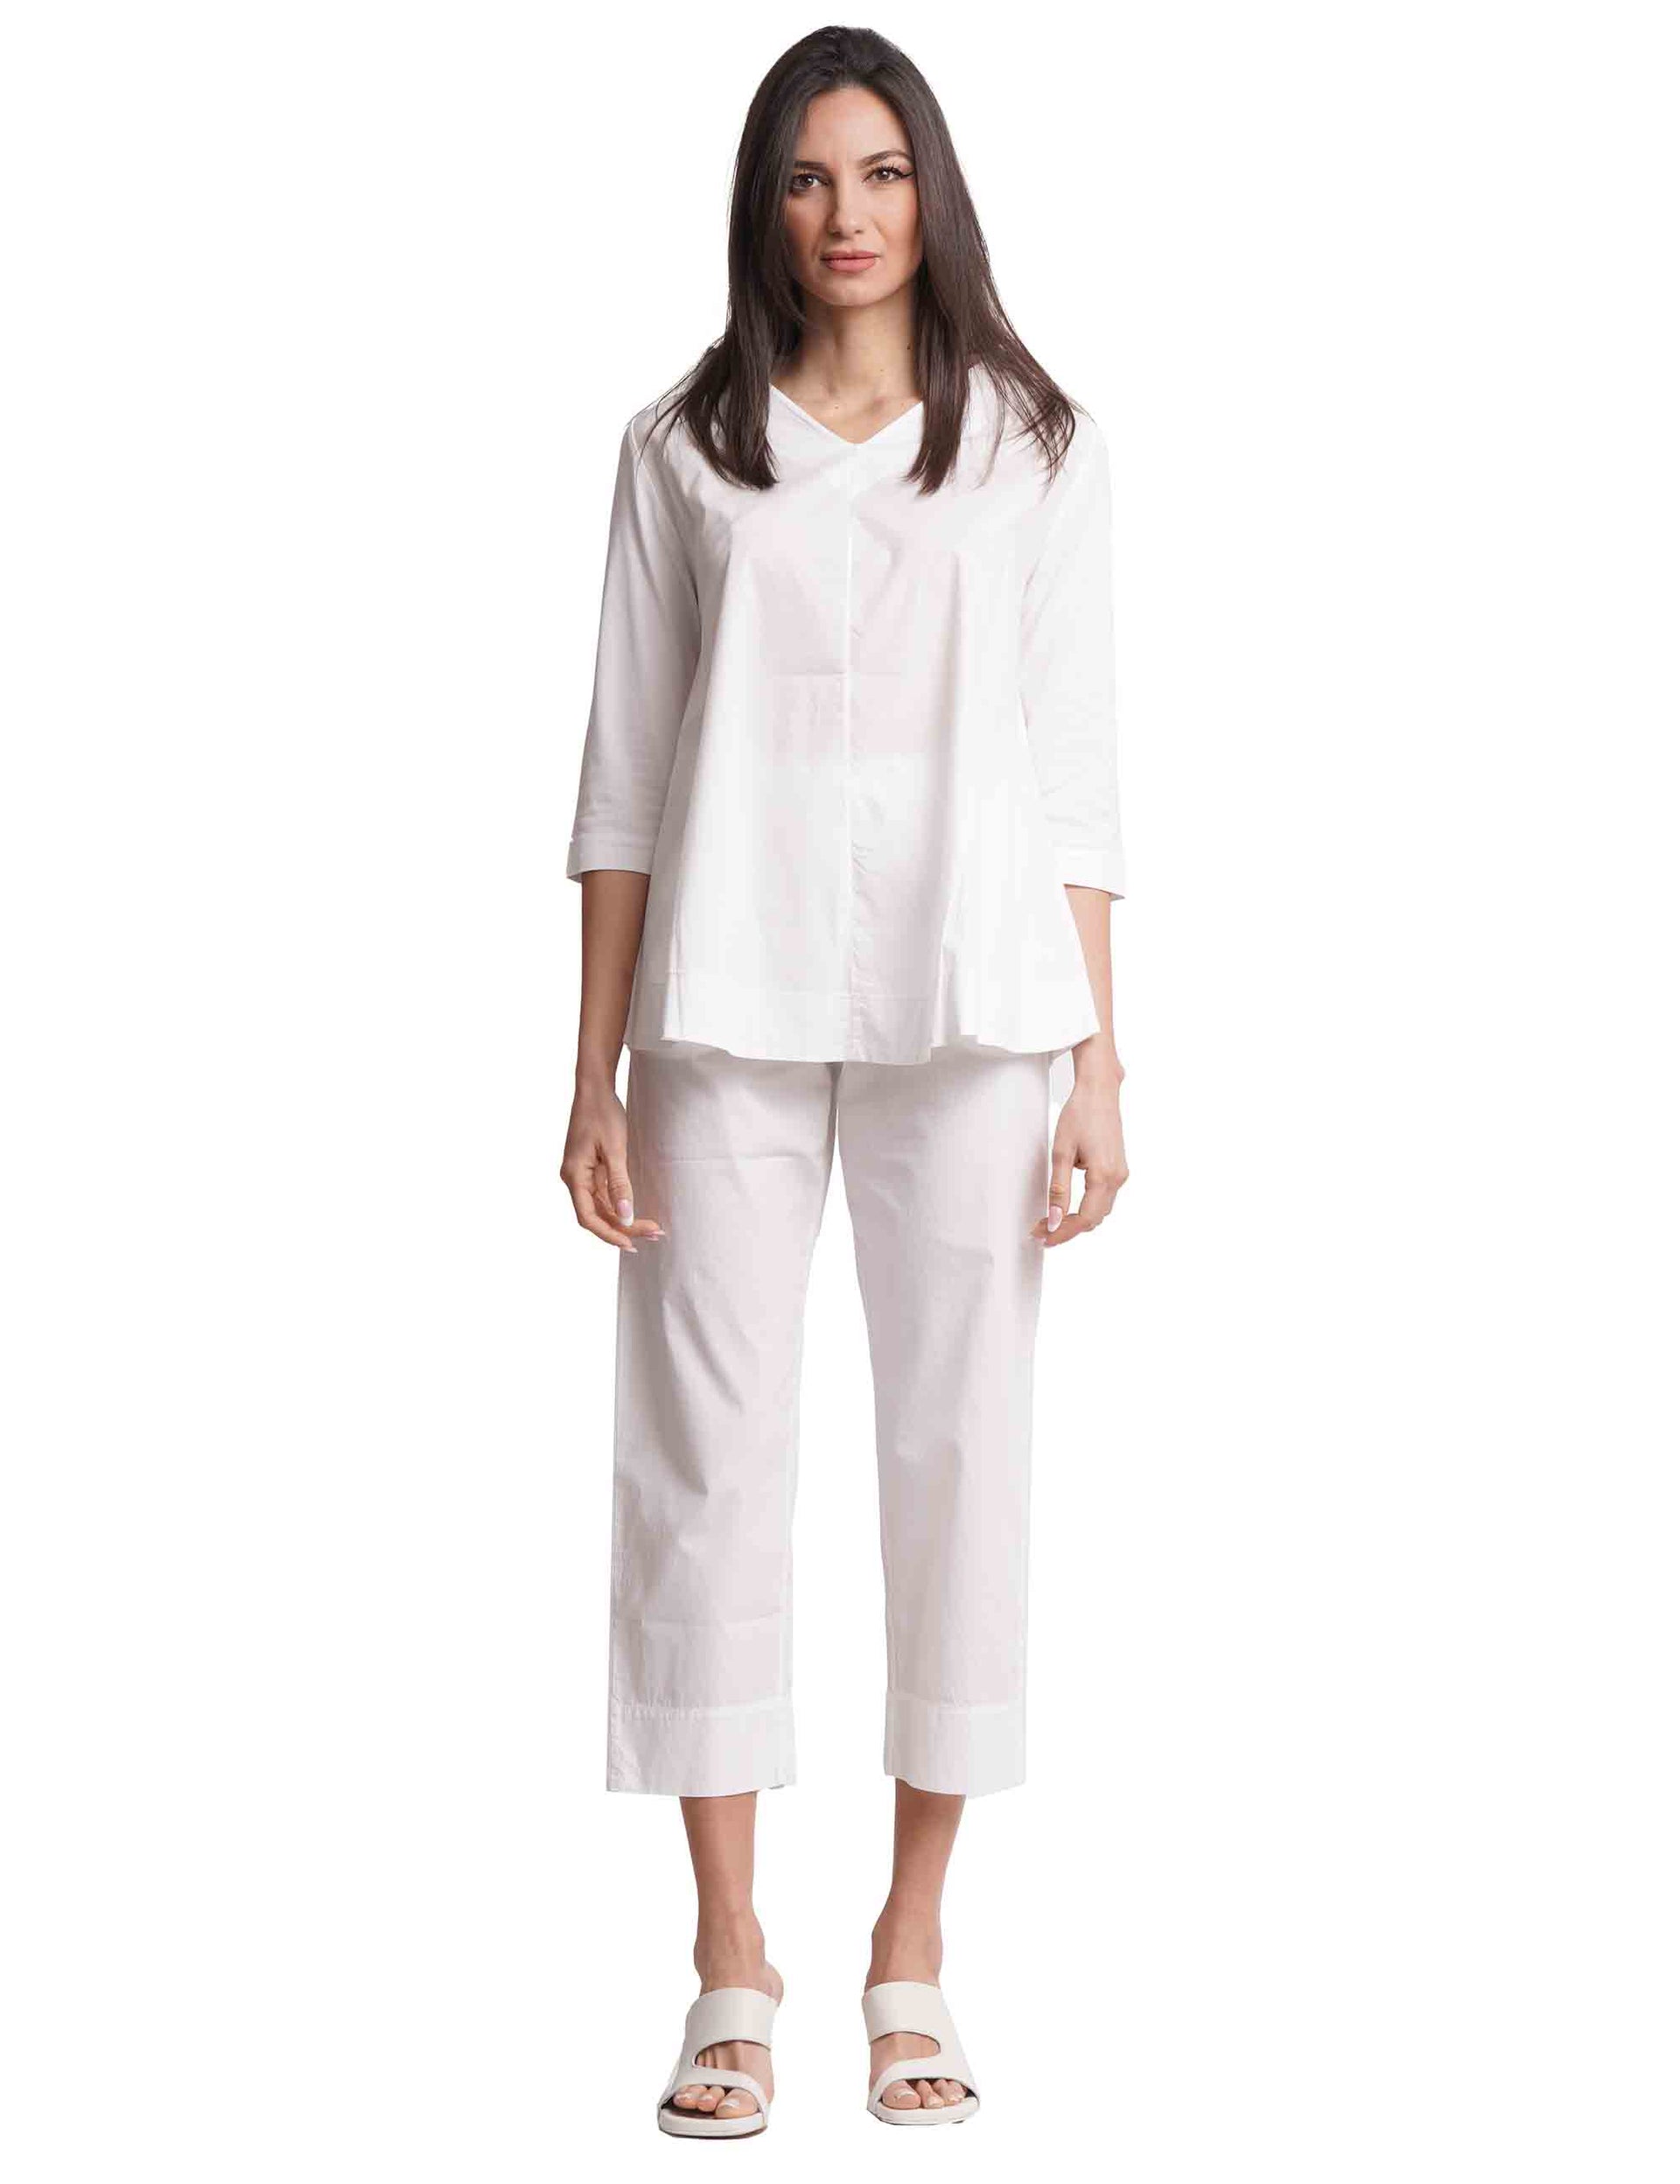 T-shirt donna in cotone bianco con scollo a V e maniche a 3/4